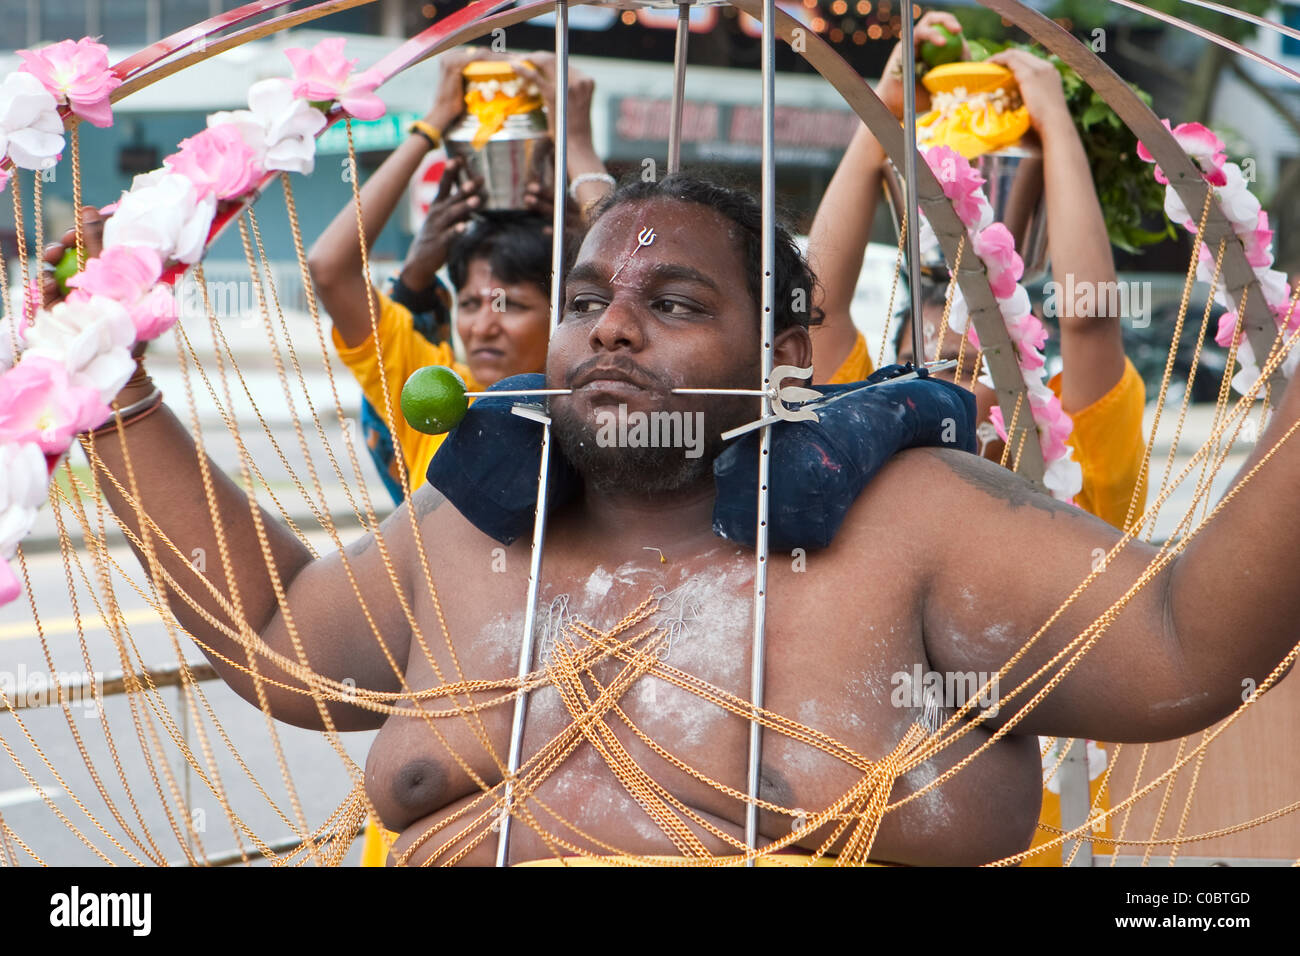 Thaipusam fête hindoue à Singapour où les gens montrent leur foi en perçant leur corps avec des crochets et pointes Banque D'Images